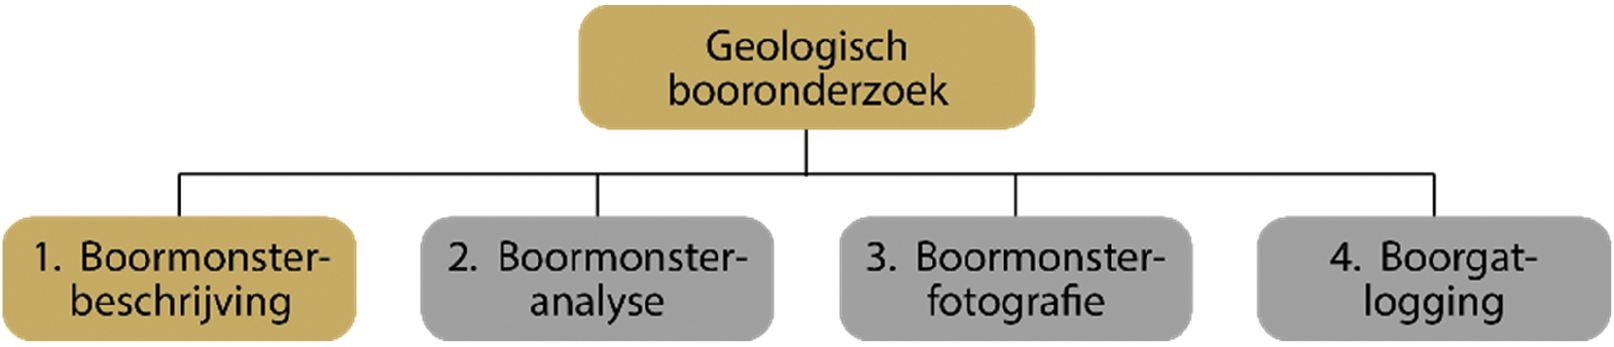 Figuur 1: Geologisch booronderzoek in deze versie van de catalogus; boormonsteranalyse, -fotografie en boorgatlogging zijn nog buiten scope.